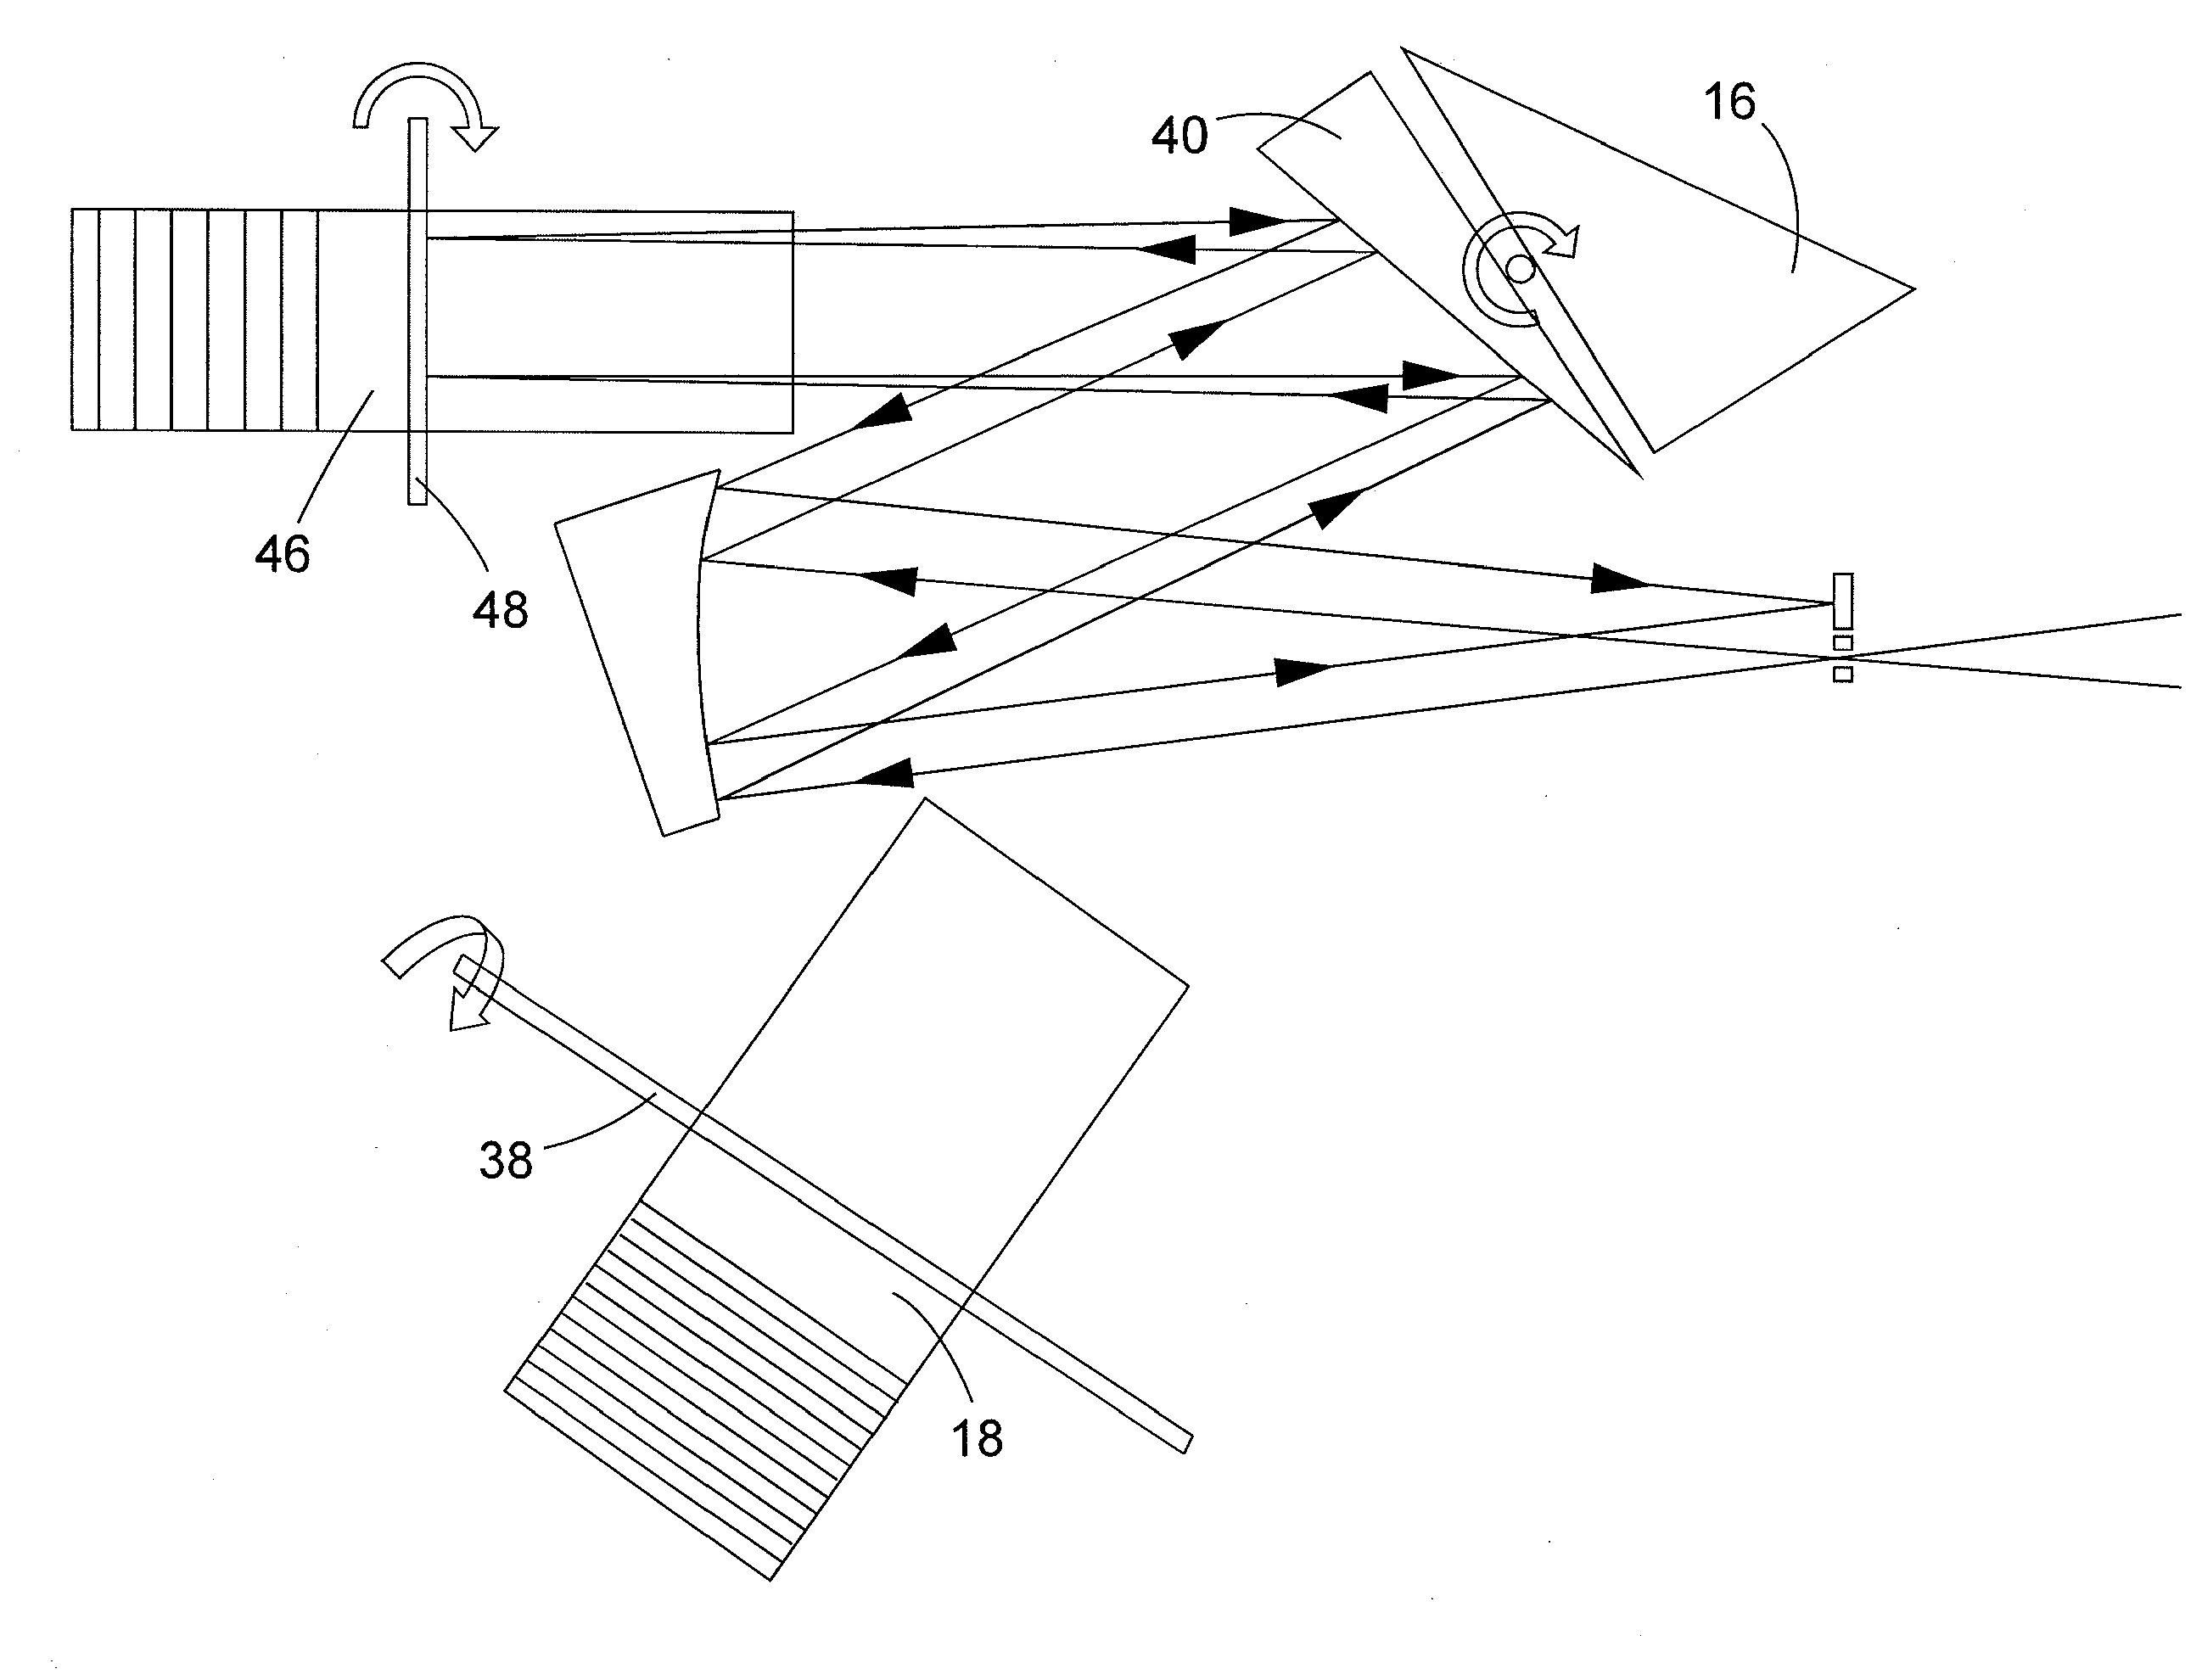 Spectrometer arrangement